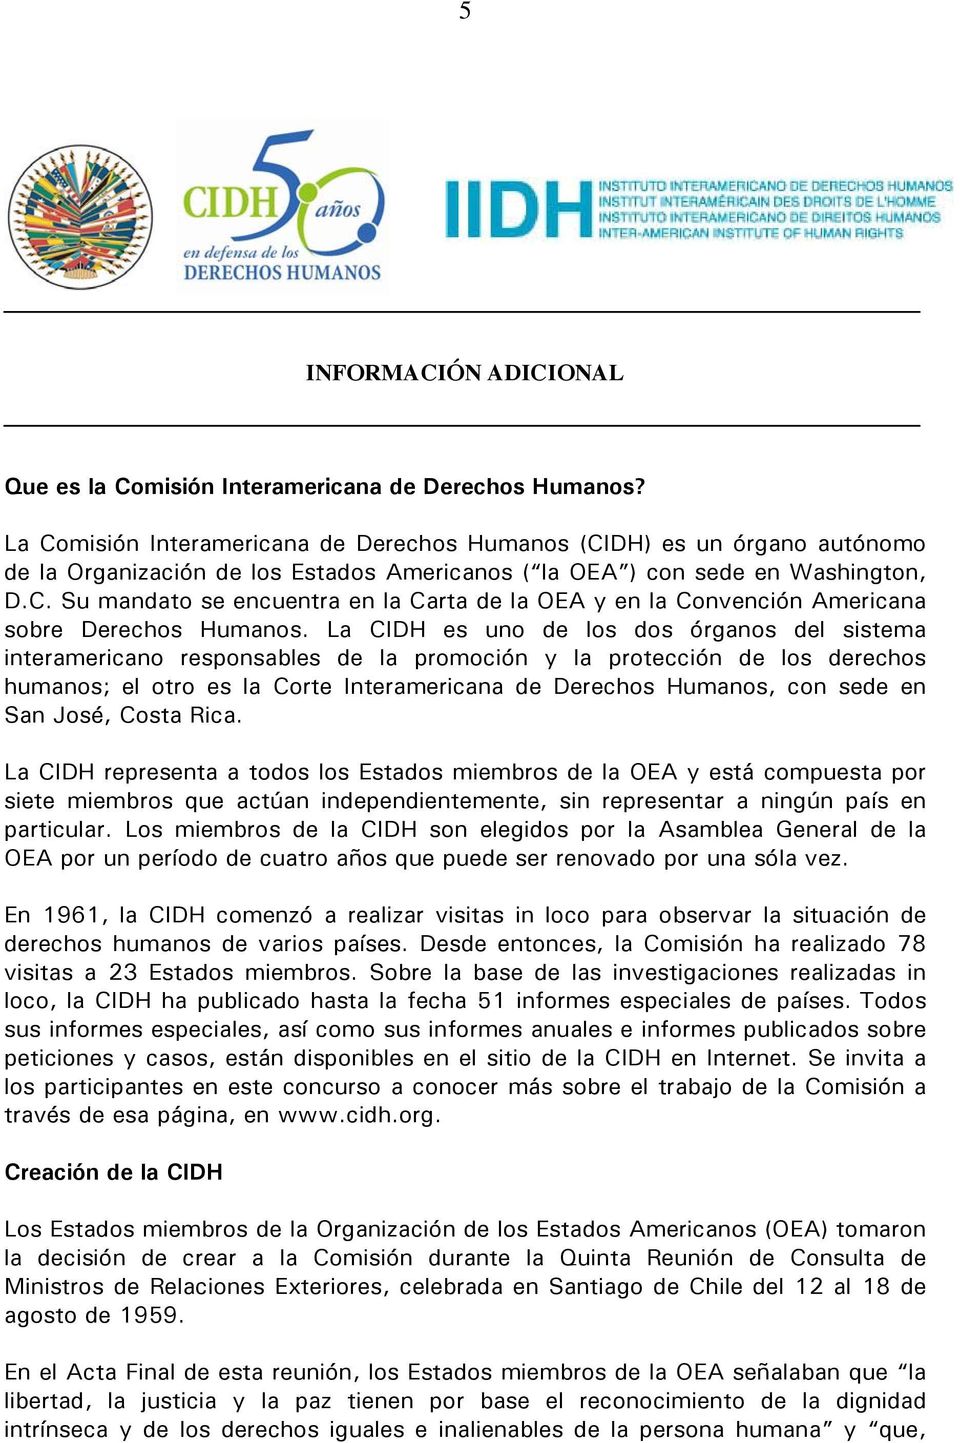 La CIDH es uno de los dos órganos del sistema interamericano responsables de la promoción y la protección de los derechos humanos; el otro es la Corte Interamericana de Derechos Humanos, con sede en